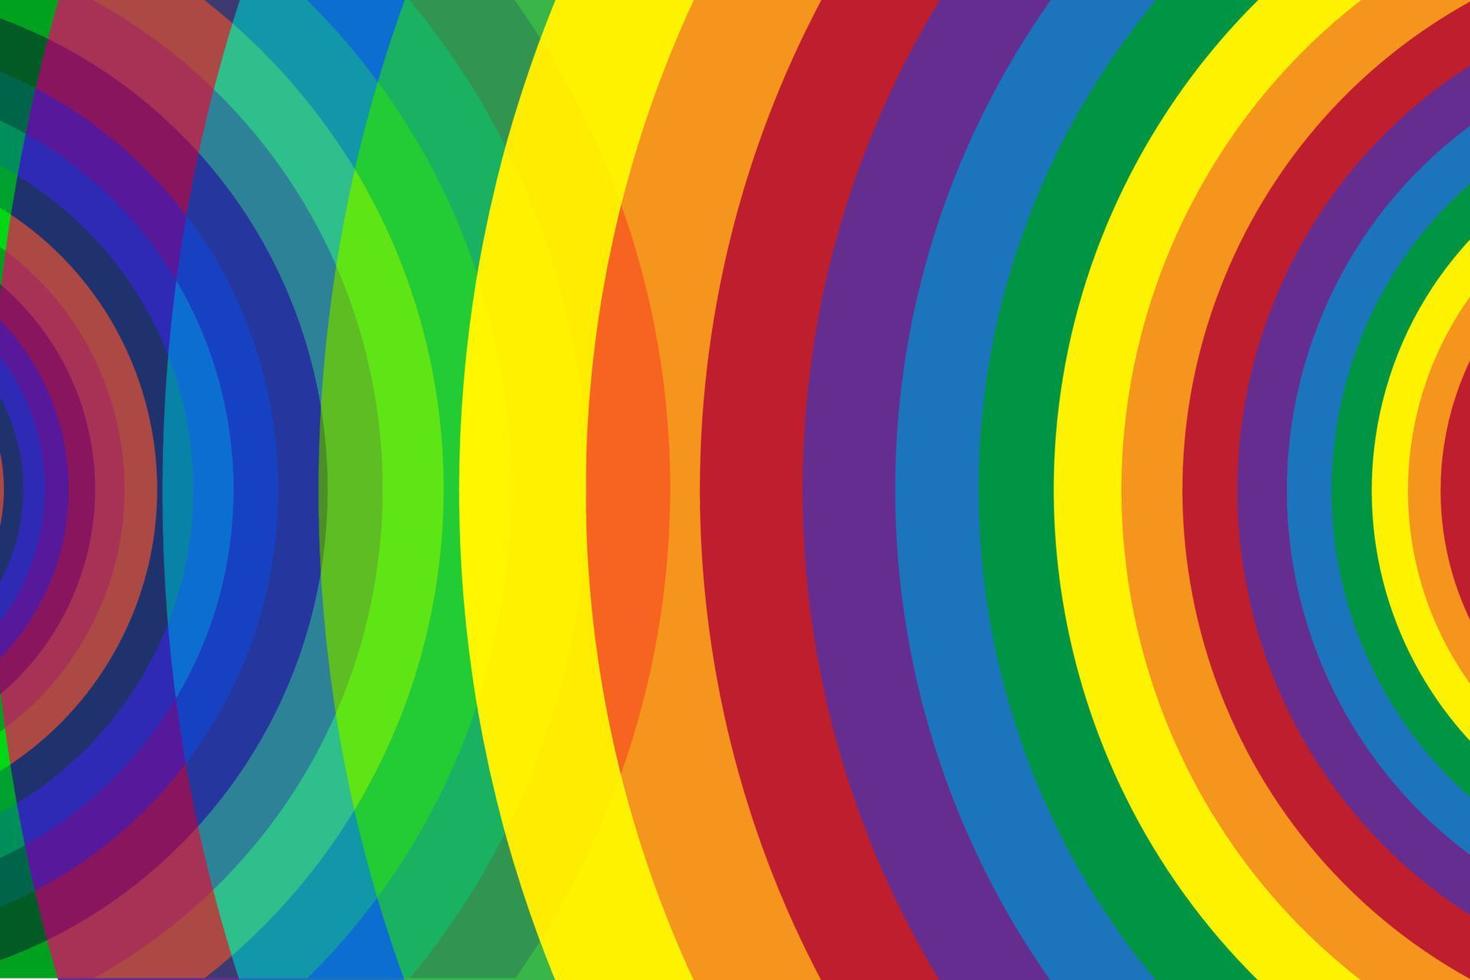 abstrait coloré, bleu, rouge, jaune, vert, orange et violet, forme ronde géométrique. illustration vectorielle. vecteur